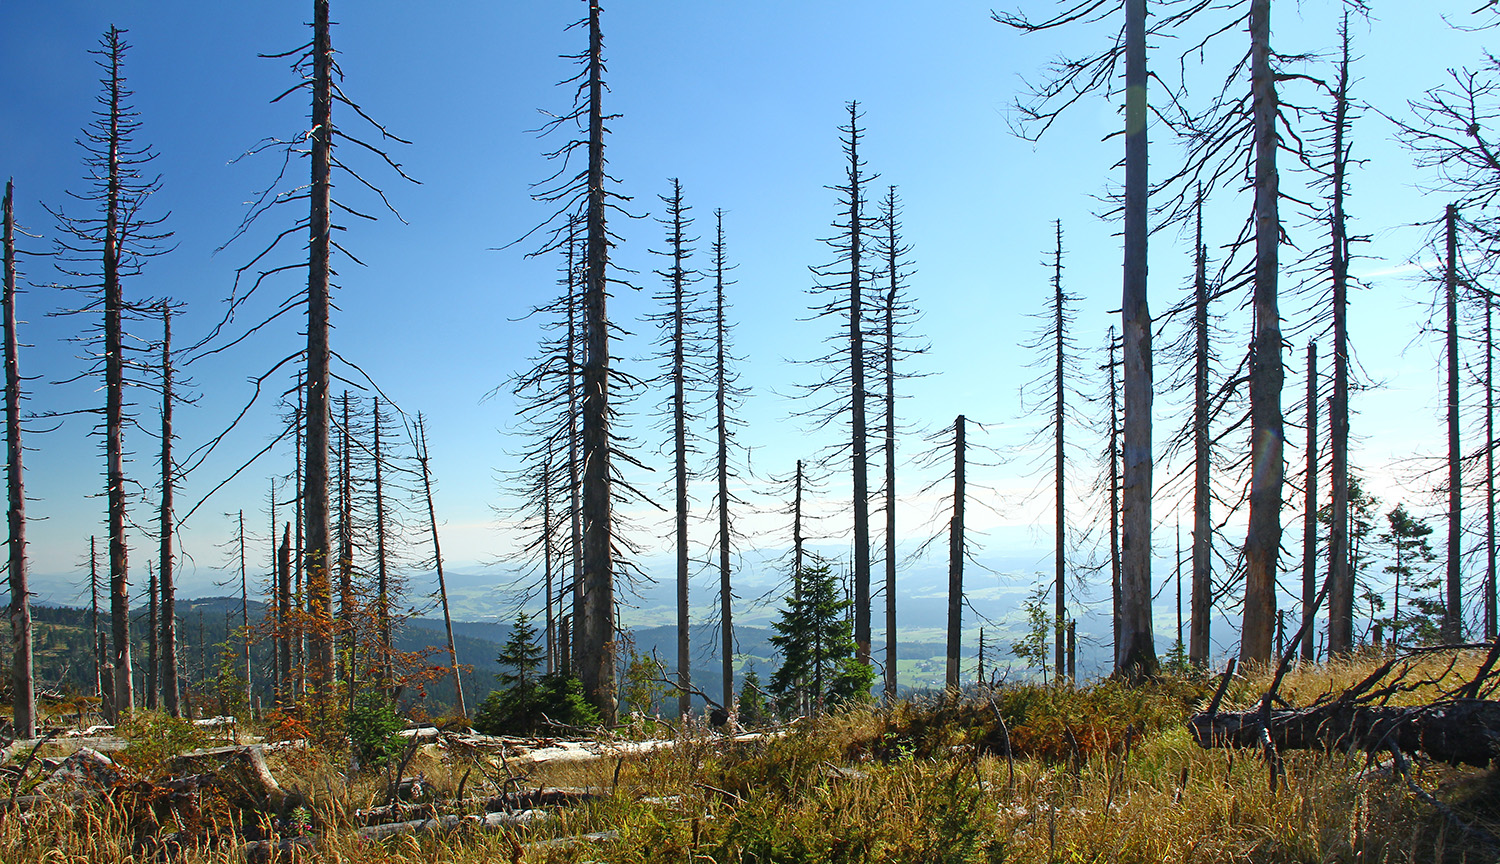 Fotografía muestra paisaje de coníferas muertas con montañas detrás.